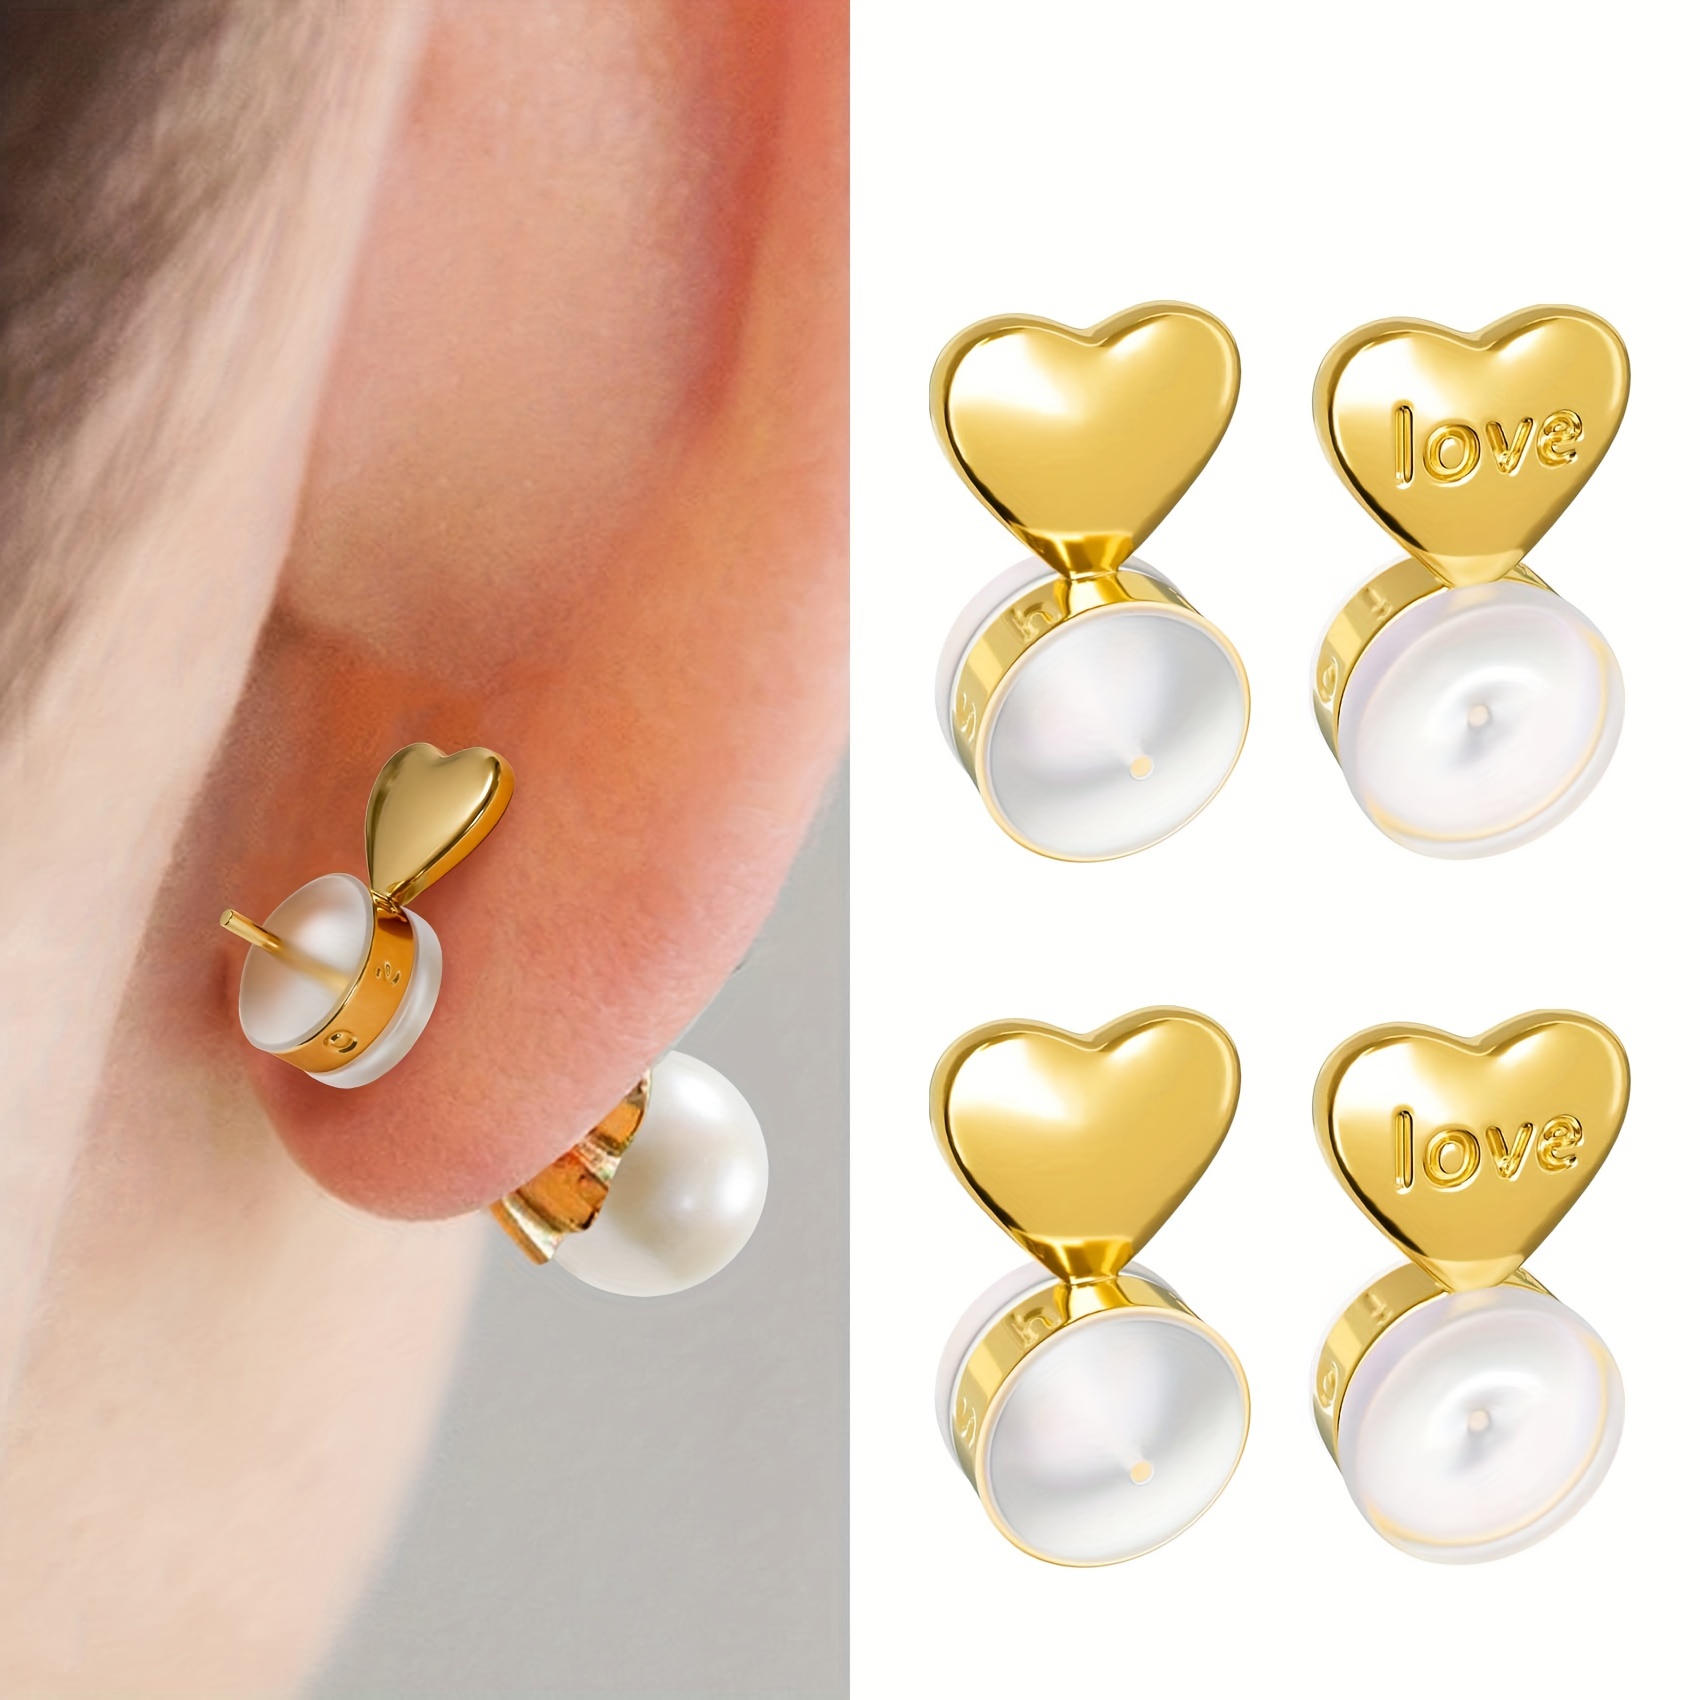 100Pcs/box Heavy Earrings Stabilizers Comfortable Ear Lobe Support